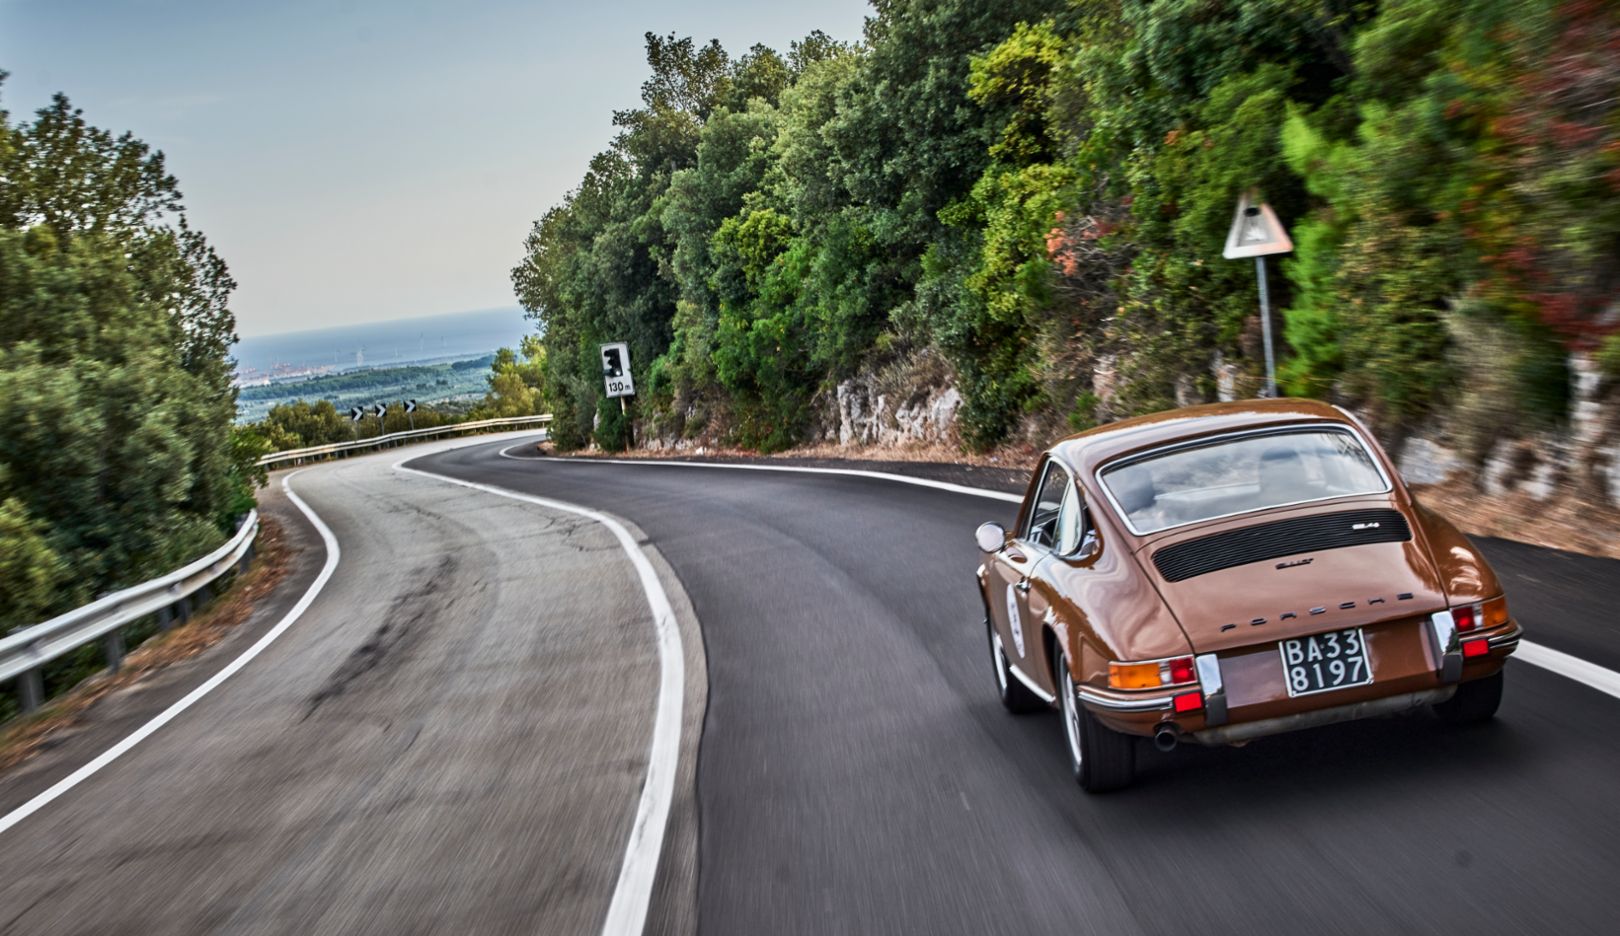 L’élégance déclinée en marron sépia : la 911 TE, millésime 1972, sur la route vers la mer.